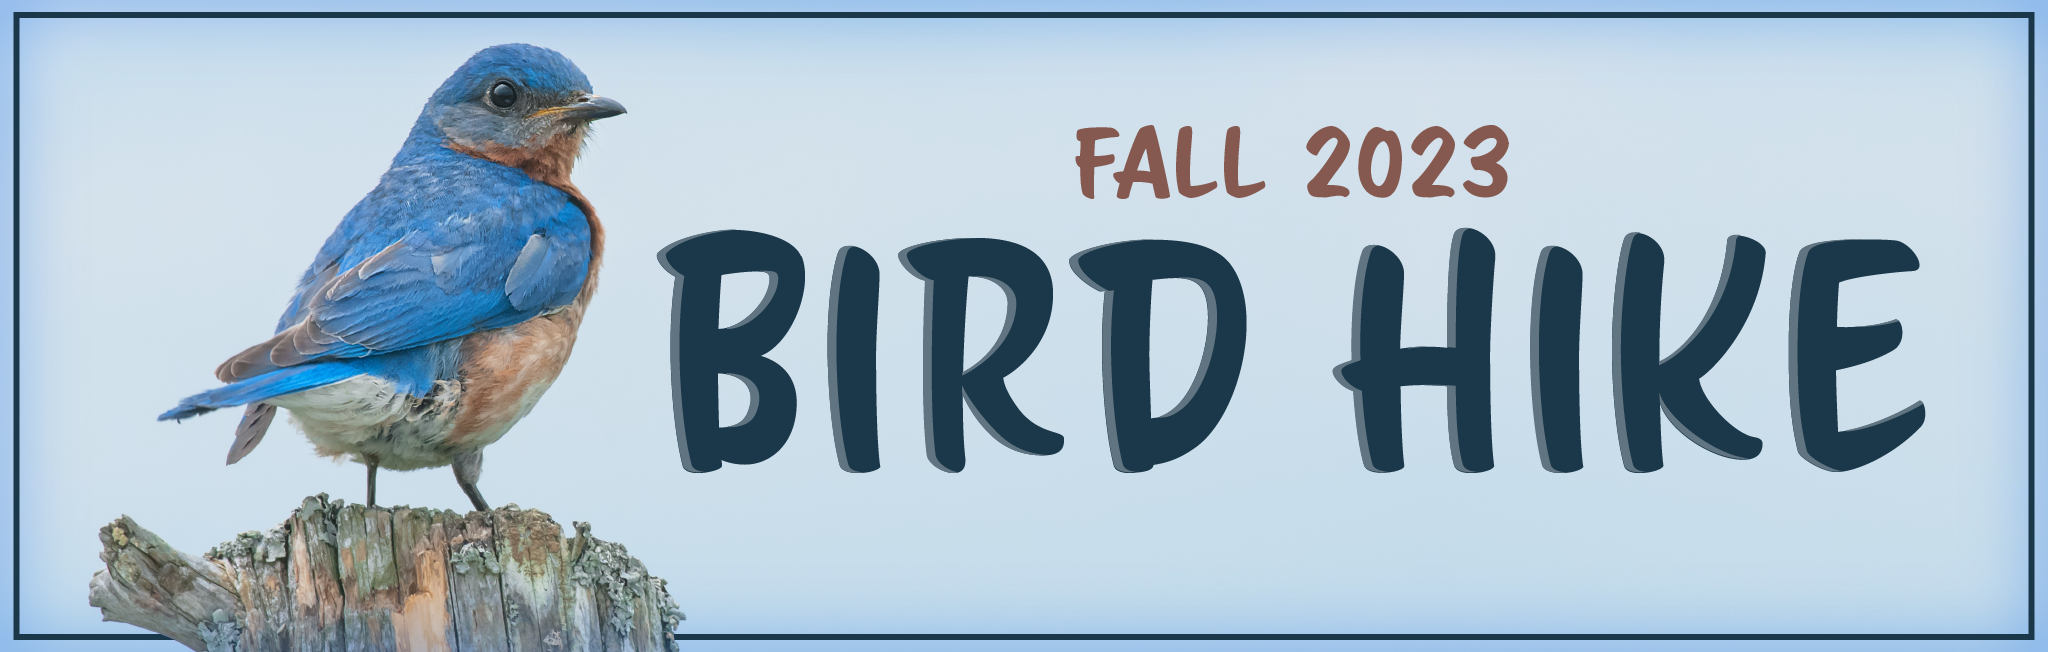 event banner for Fall bird hike featuring a blue bird